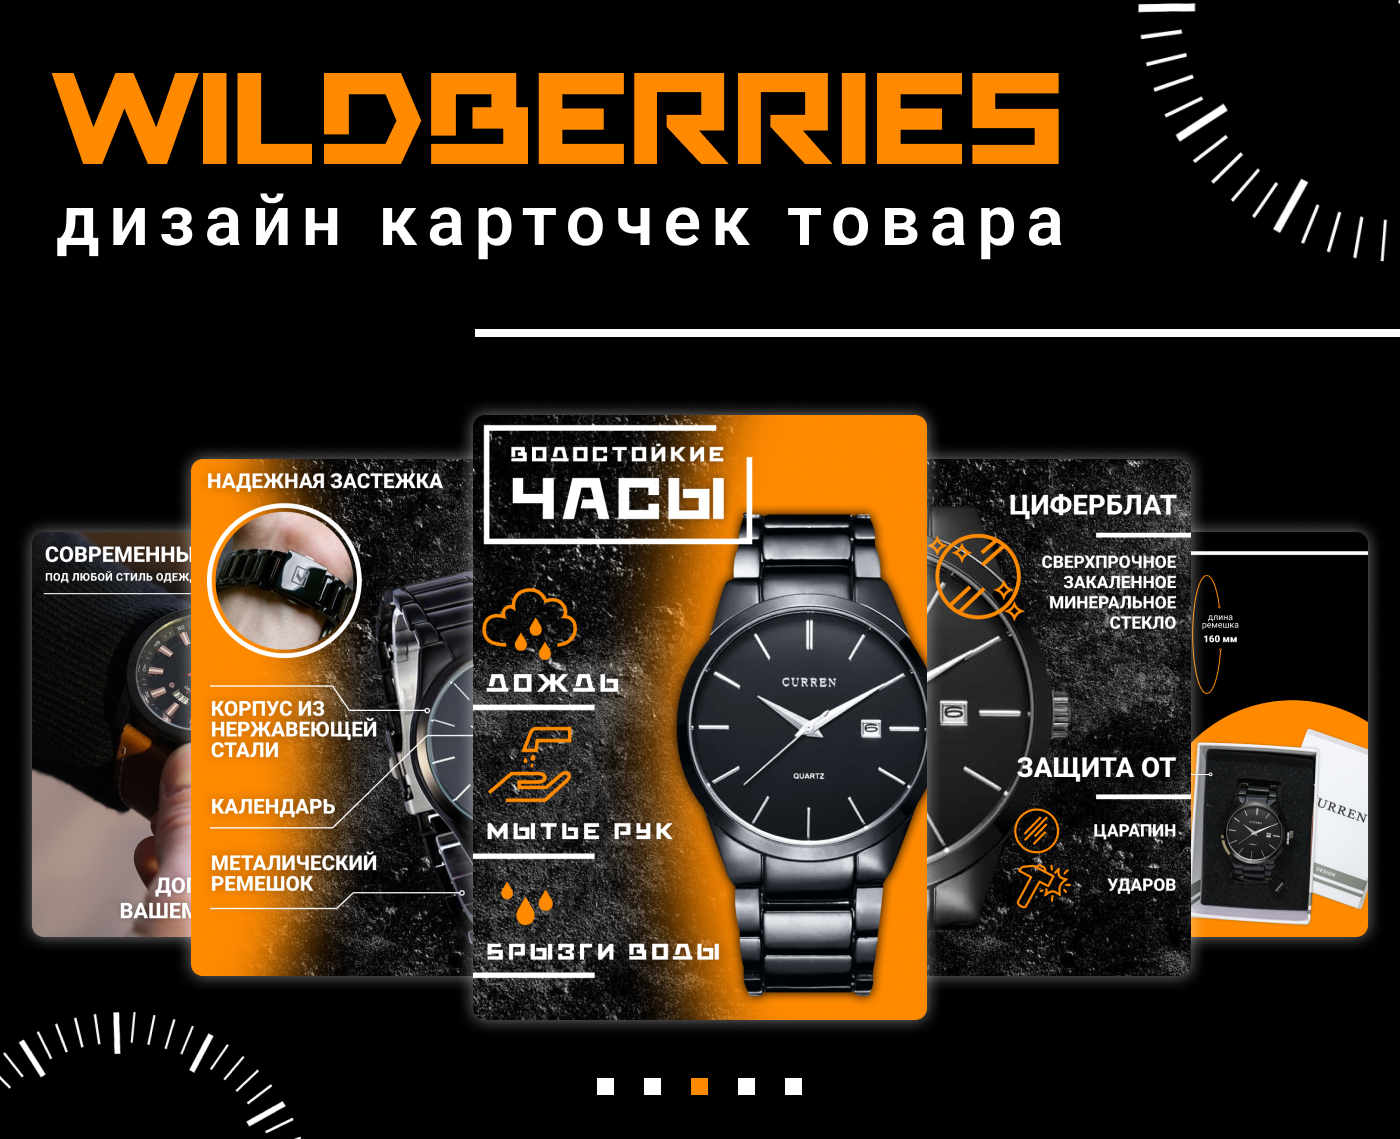 Маркетплейс часов. Инфографика Wildberries для карточек. Дизайн инфографики для Wildberries. Дизайн инфографика для маркетплейсов. Дизайн карточек товара для Wildberries.